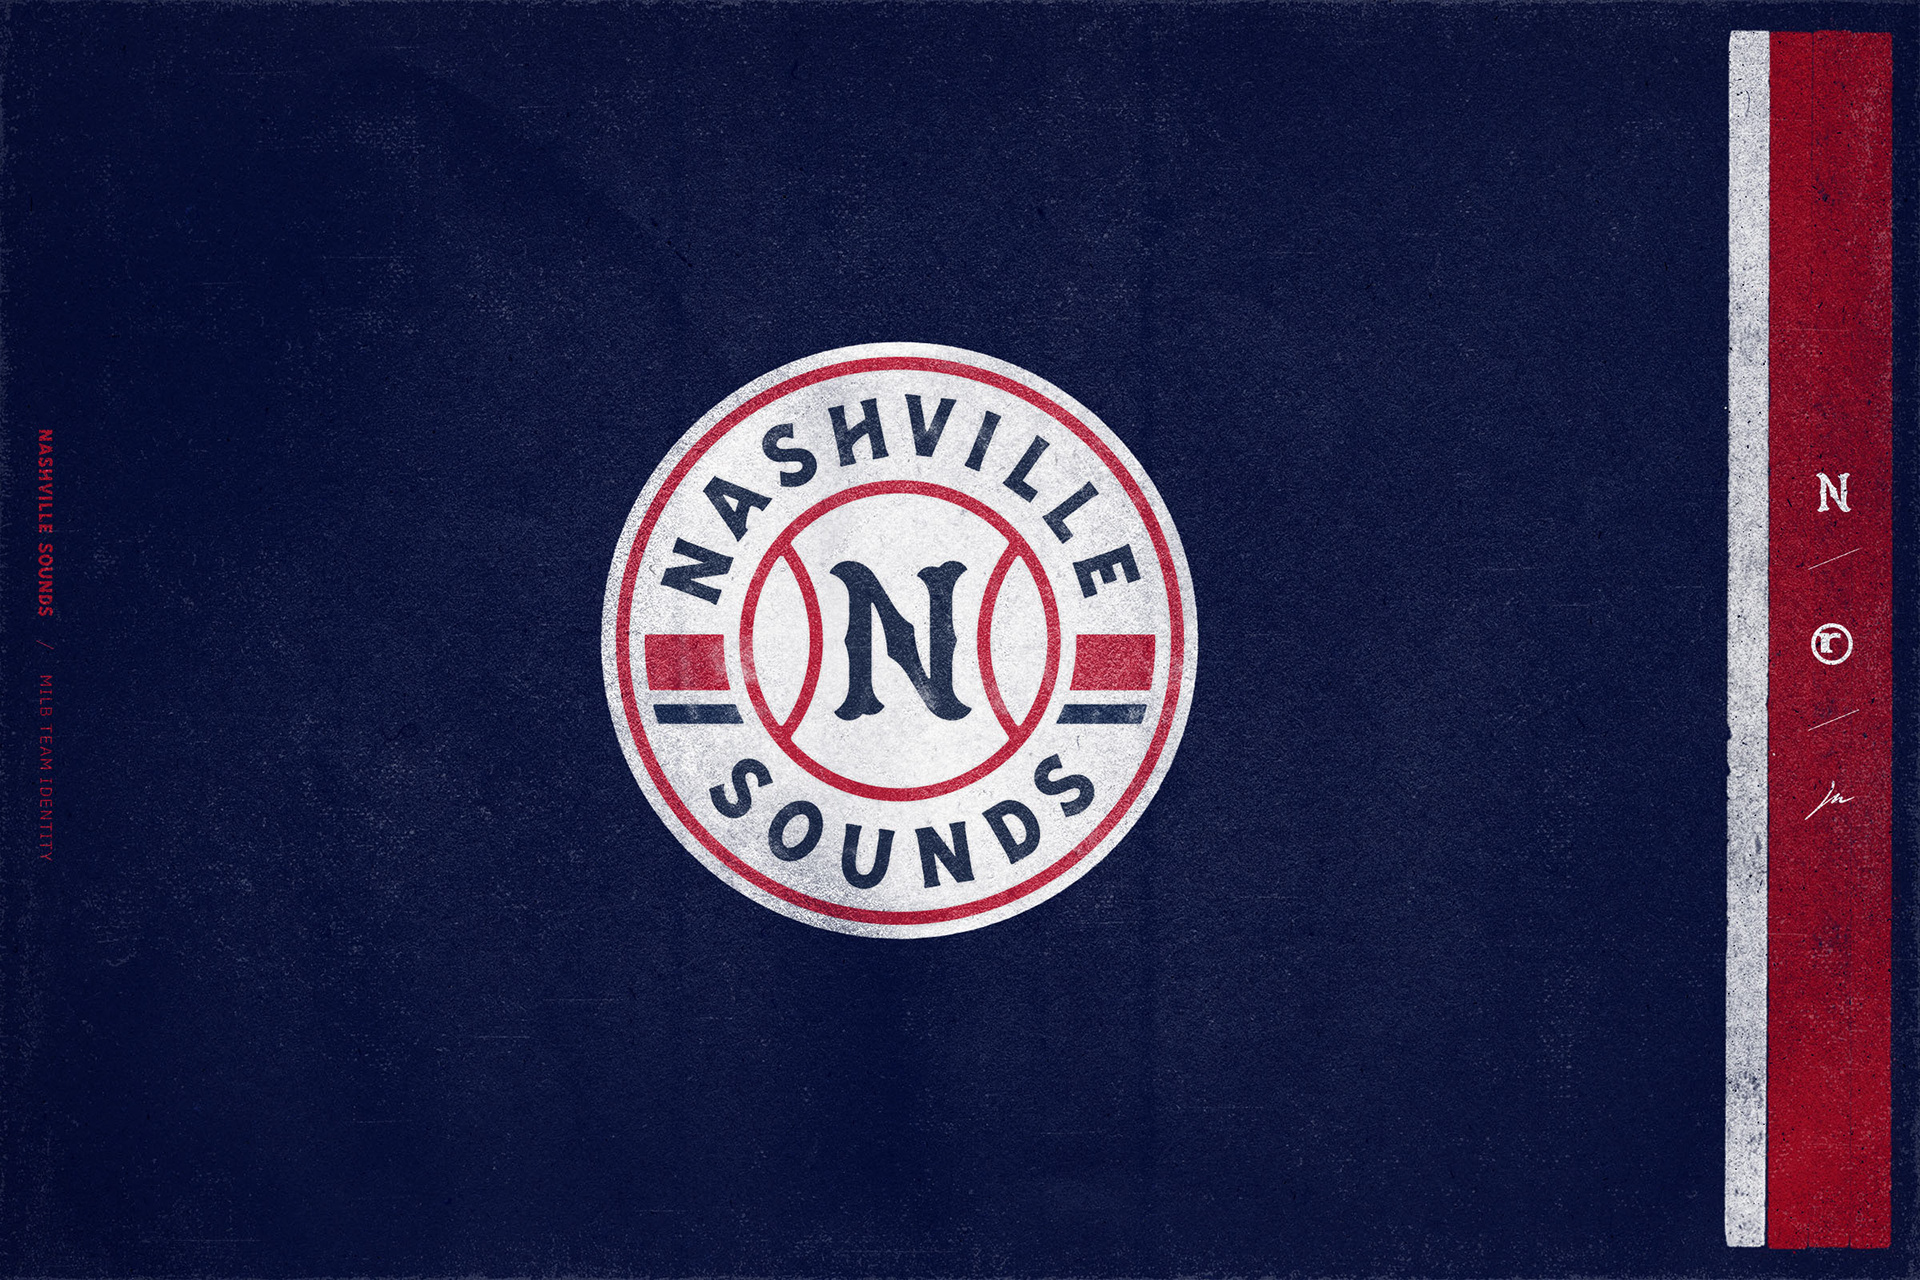 Nashville Sounds | MiLB Brand Identity on Behancee7e04b90089799.5e0d74b8195fd.jpg